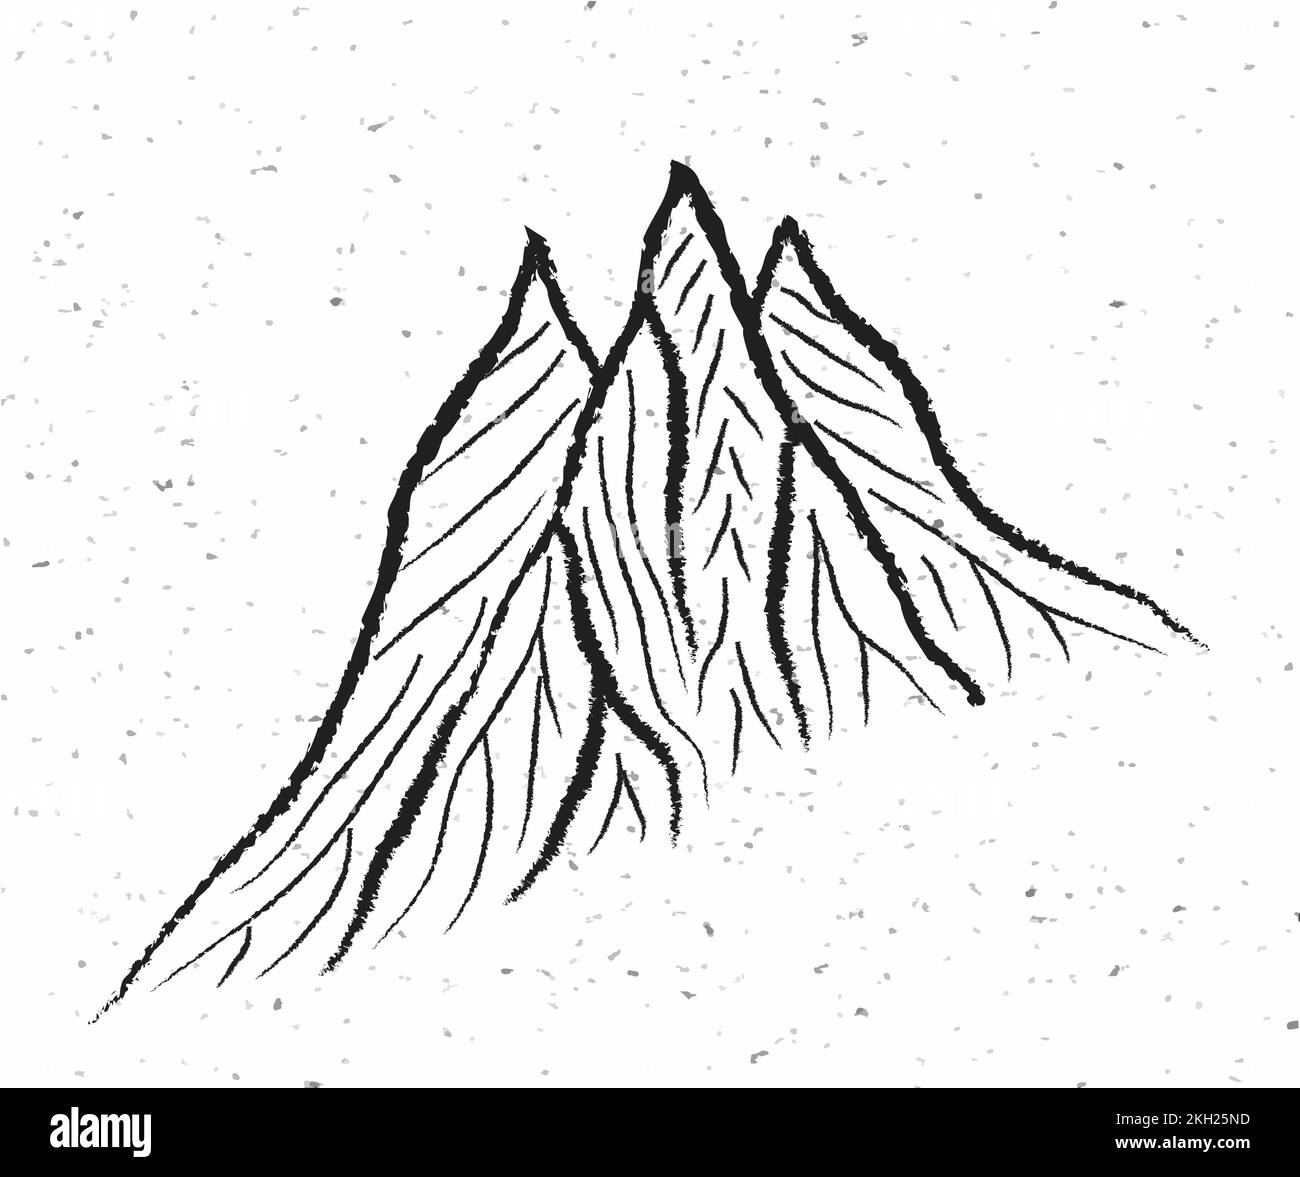 illustration de vecteur de montagne logo de montagnes de l'himalaya, silhouette noire et blanche Illustration de Vecteur